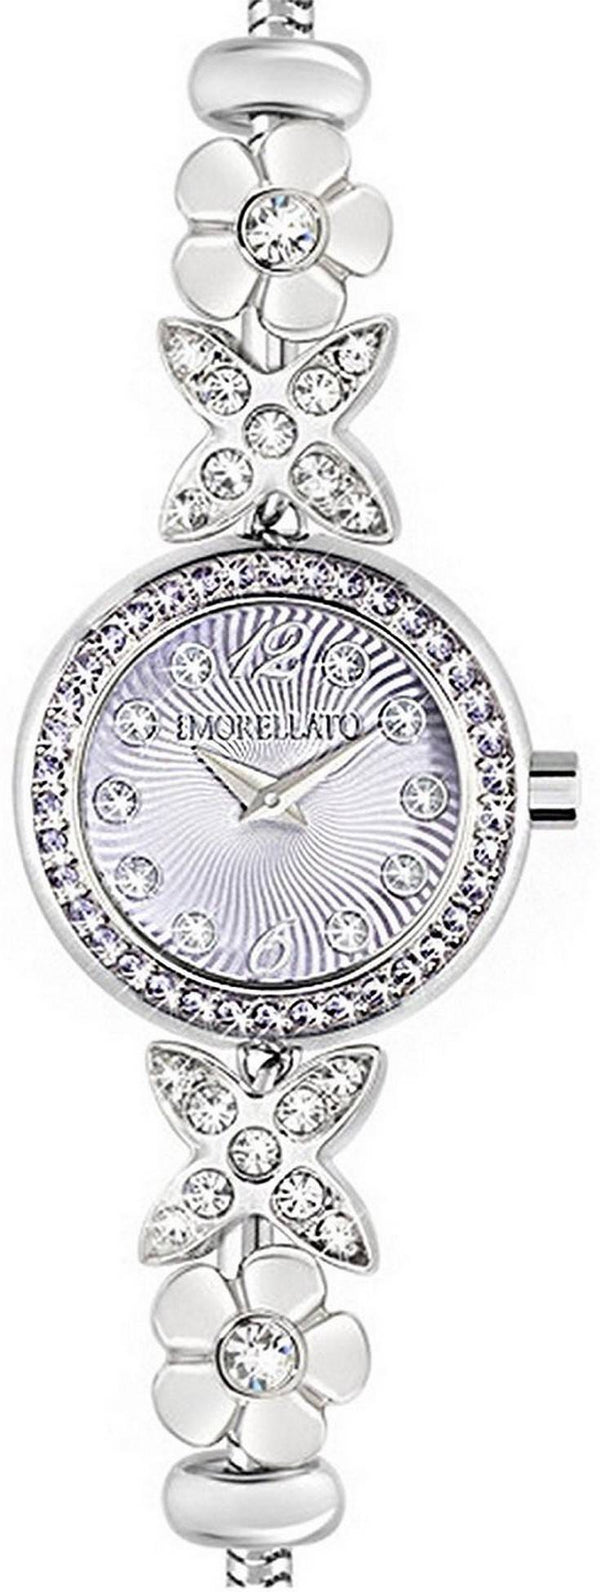 Morellato Drops Diamond Accents Quartz R0153122519 Women's Watch